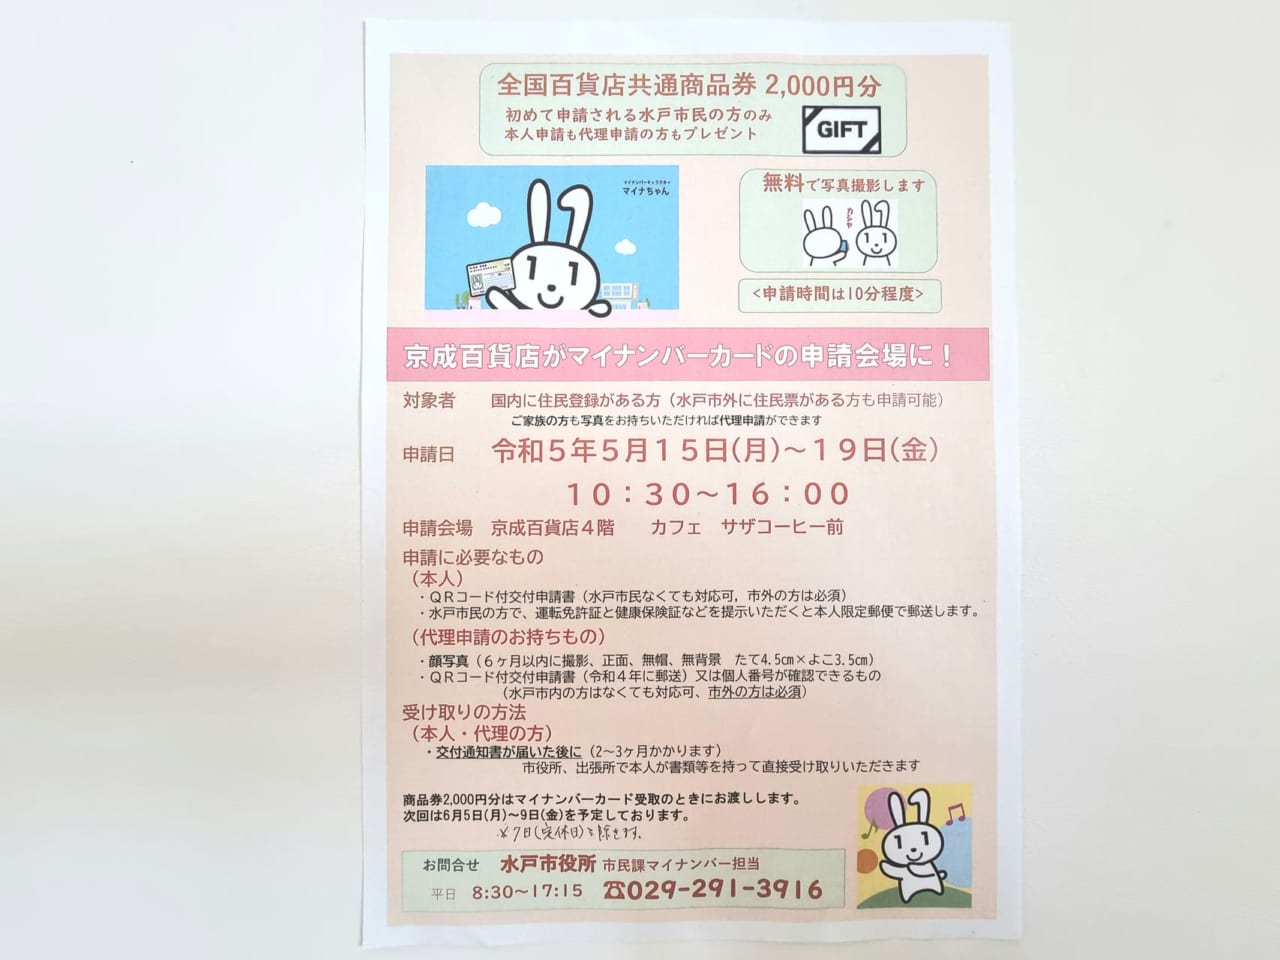 水戸京成百貨店でマイナンバーカード申請のチラシ